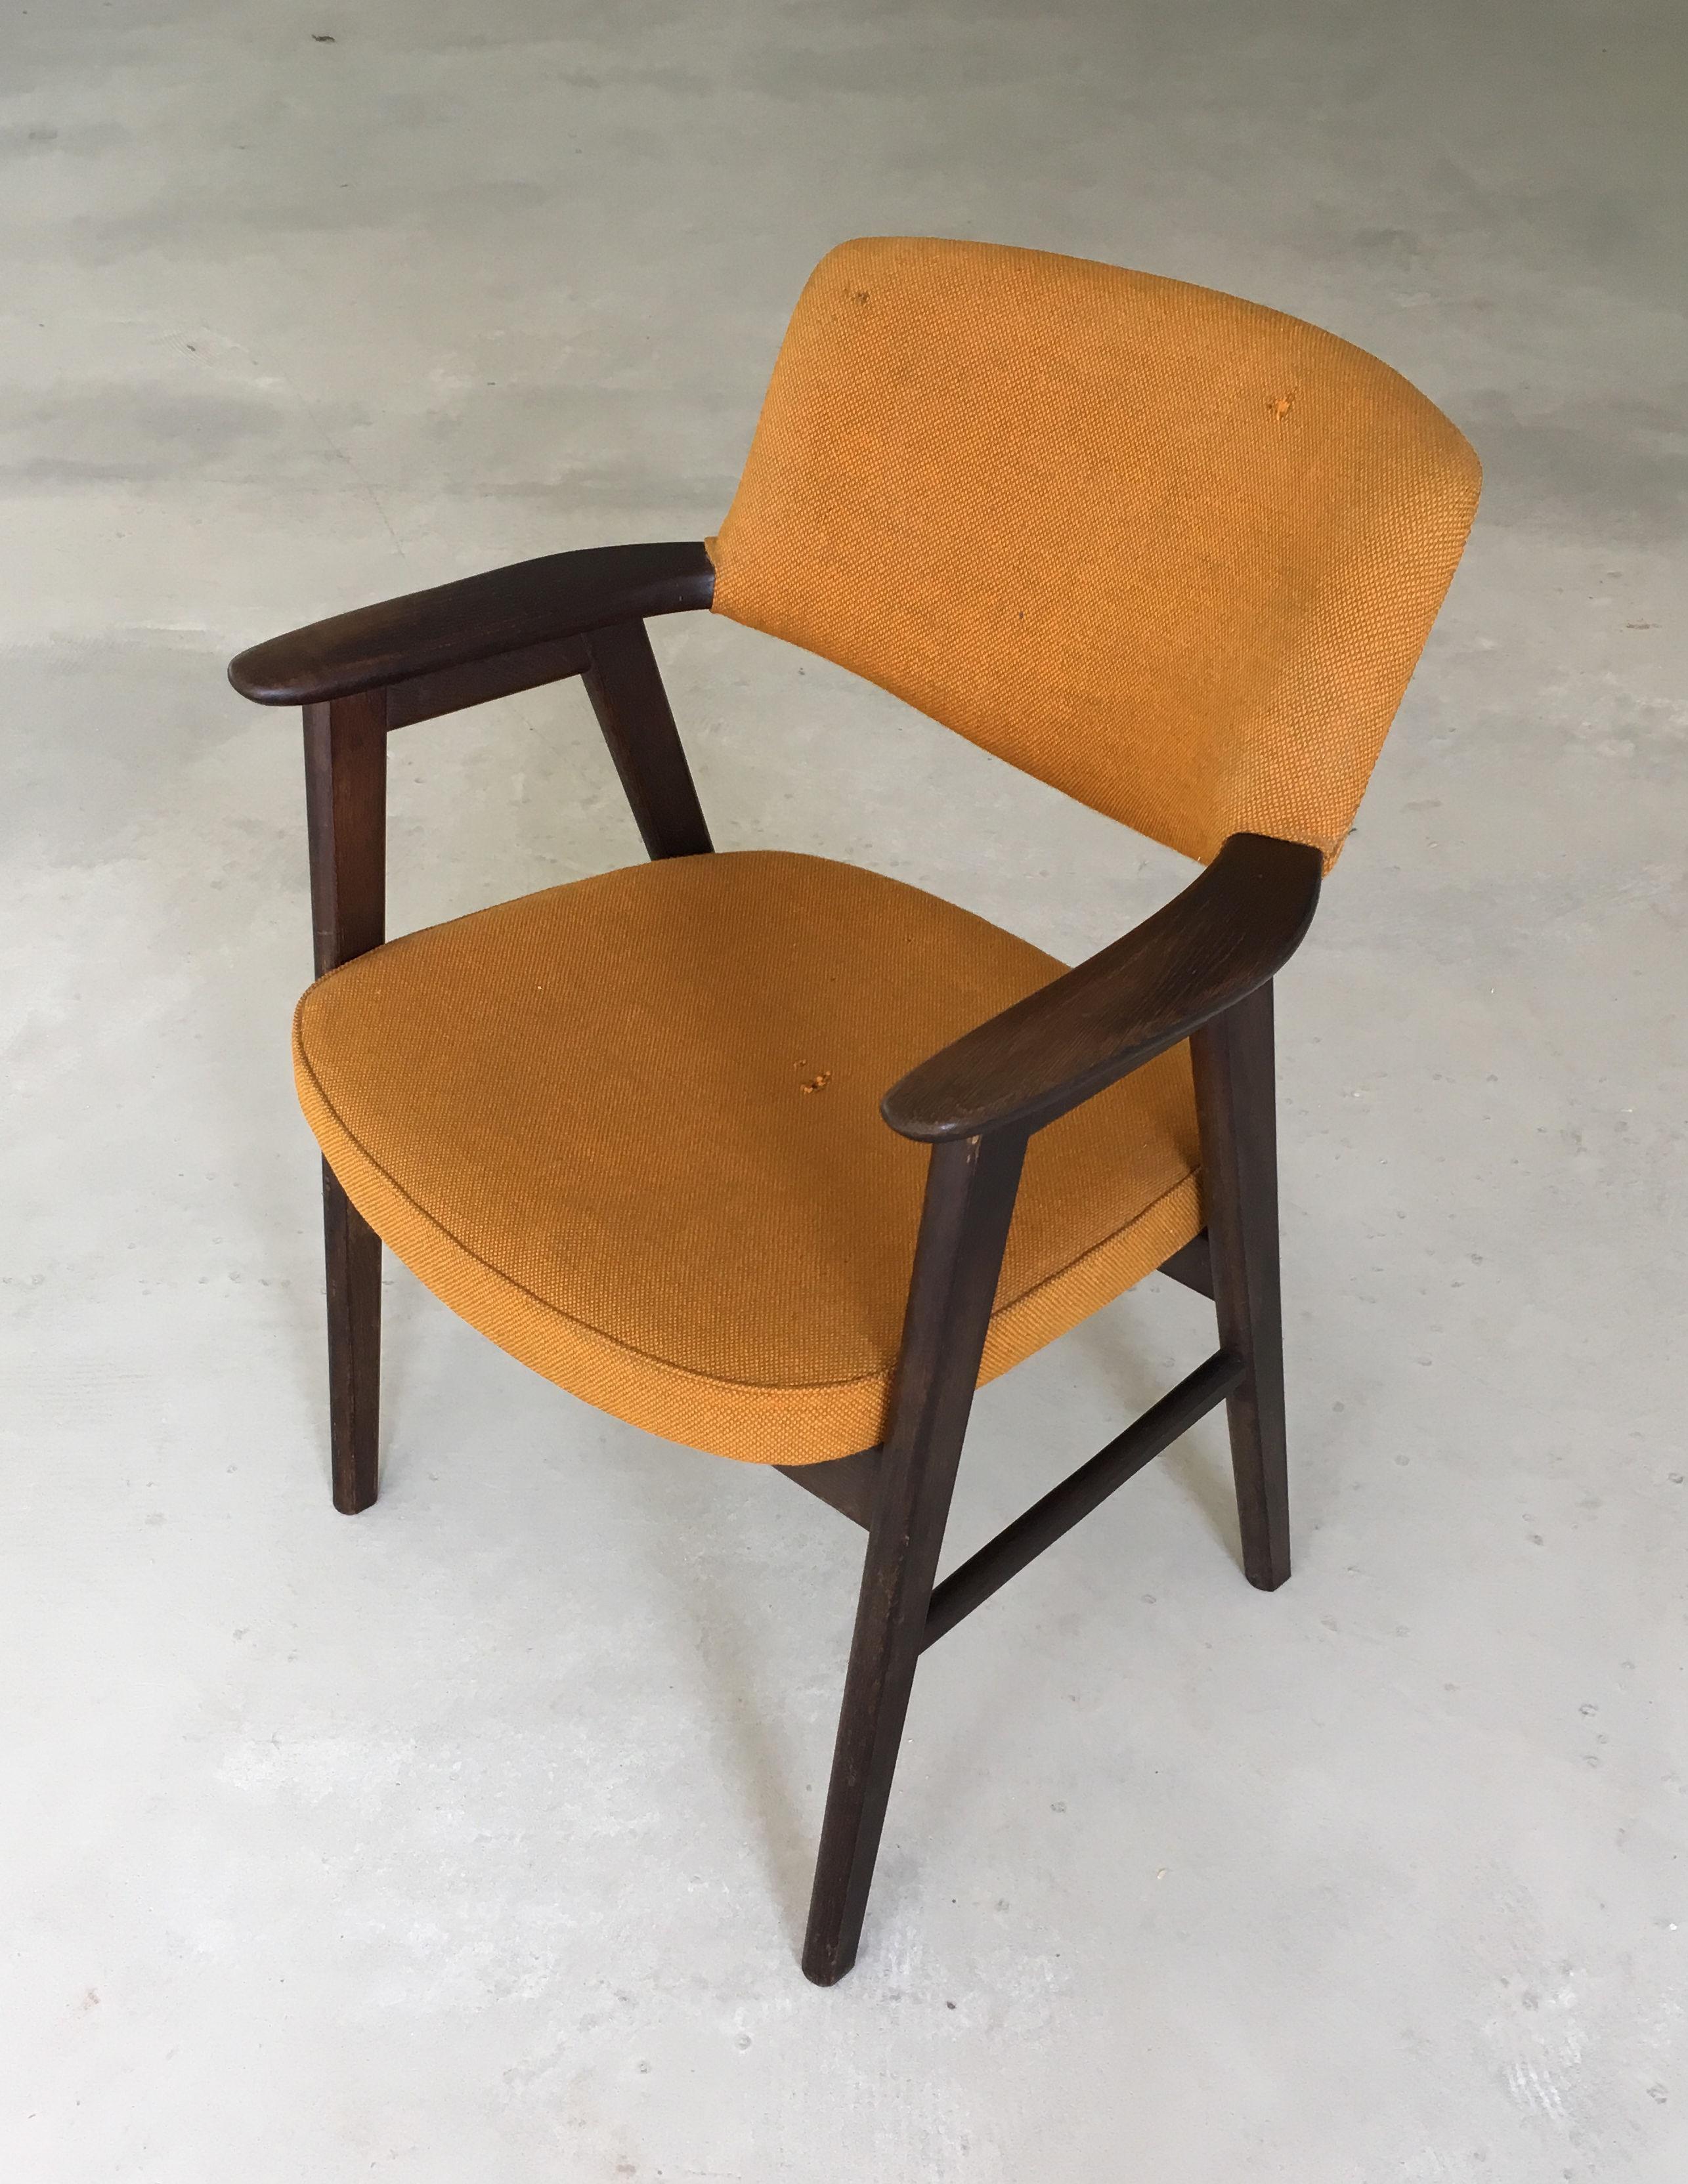 Chaise de bureau danoise Erik Kirkegaard en chêne tanné, conçue pour Høng Stolefabrik en 1956. 

Cette chaise confortable présente un design minimaliste simple et conviendra parfaitement comme chaise de bureau.

Les cadres des chaises ont été